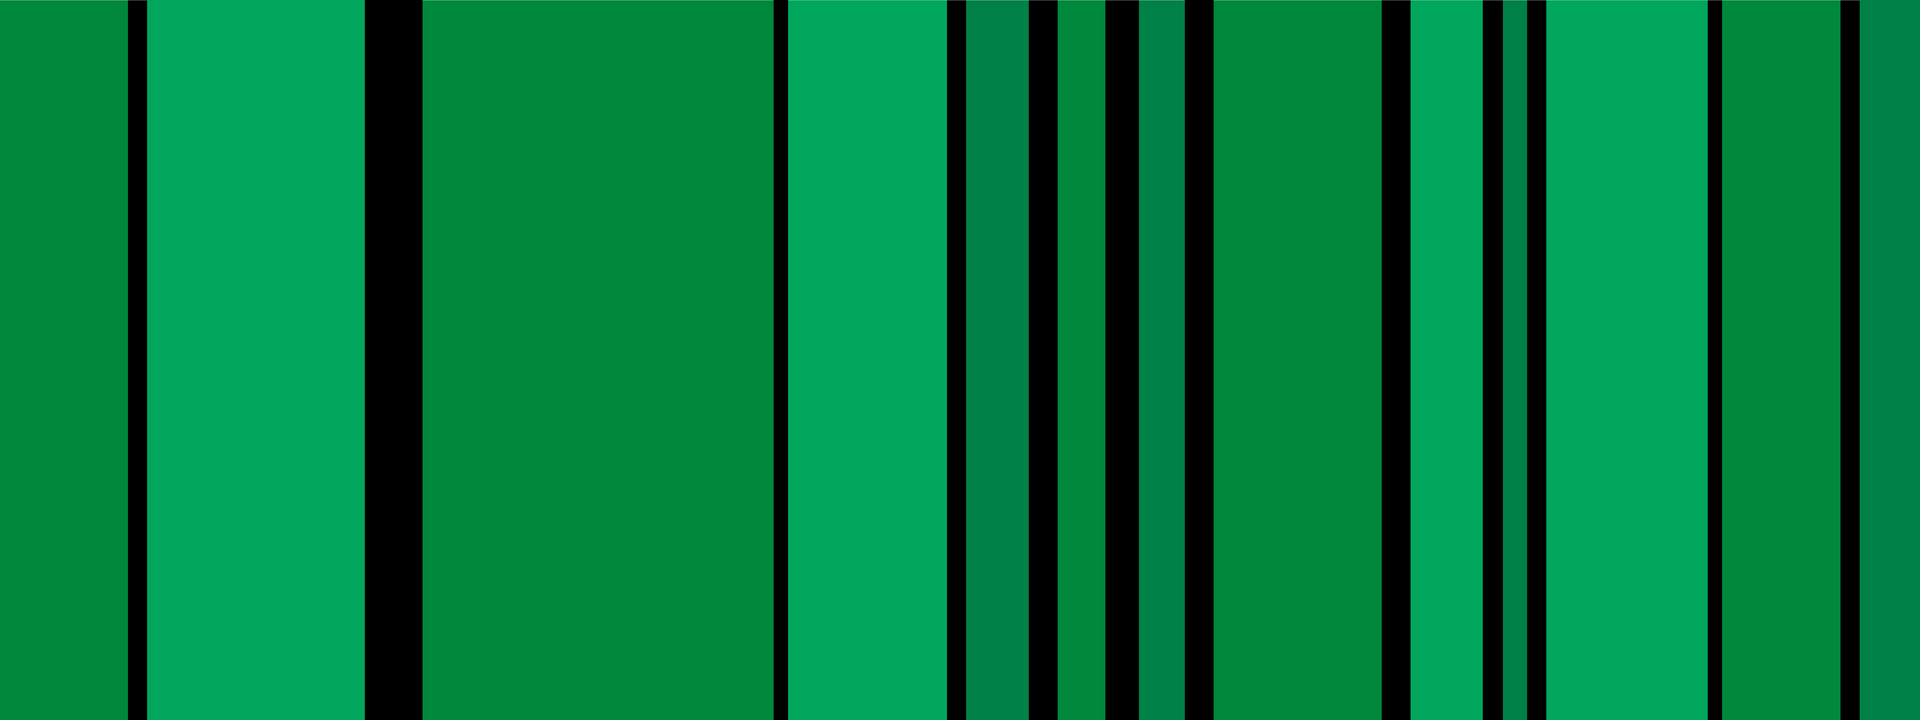 Vertikale Streifen in verschiedenen, dunklen Grüntönen. Unterbrochen von unterschiedlich breiten schwarzen Linien.